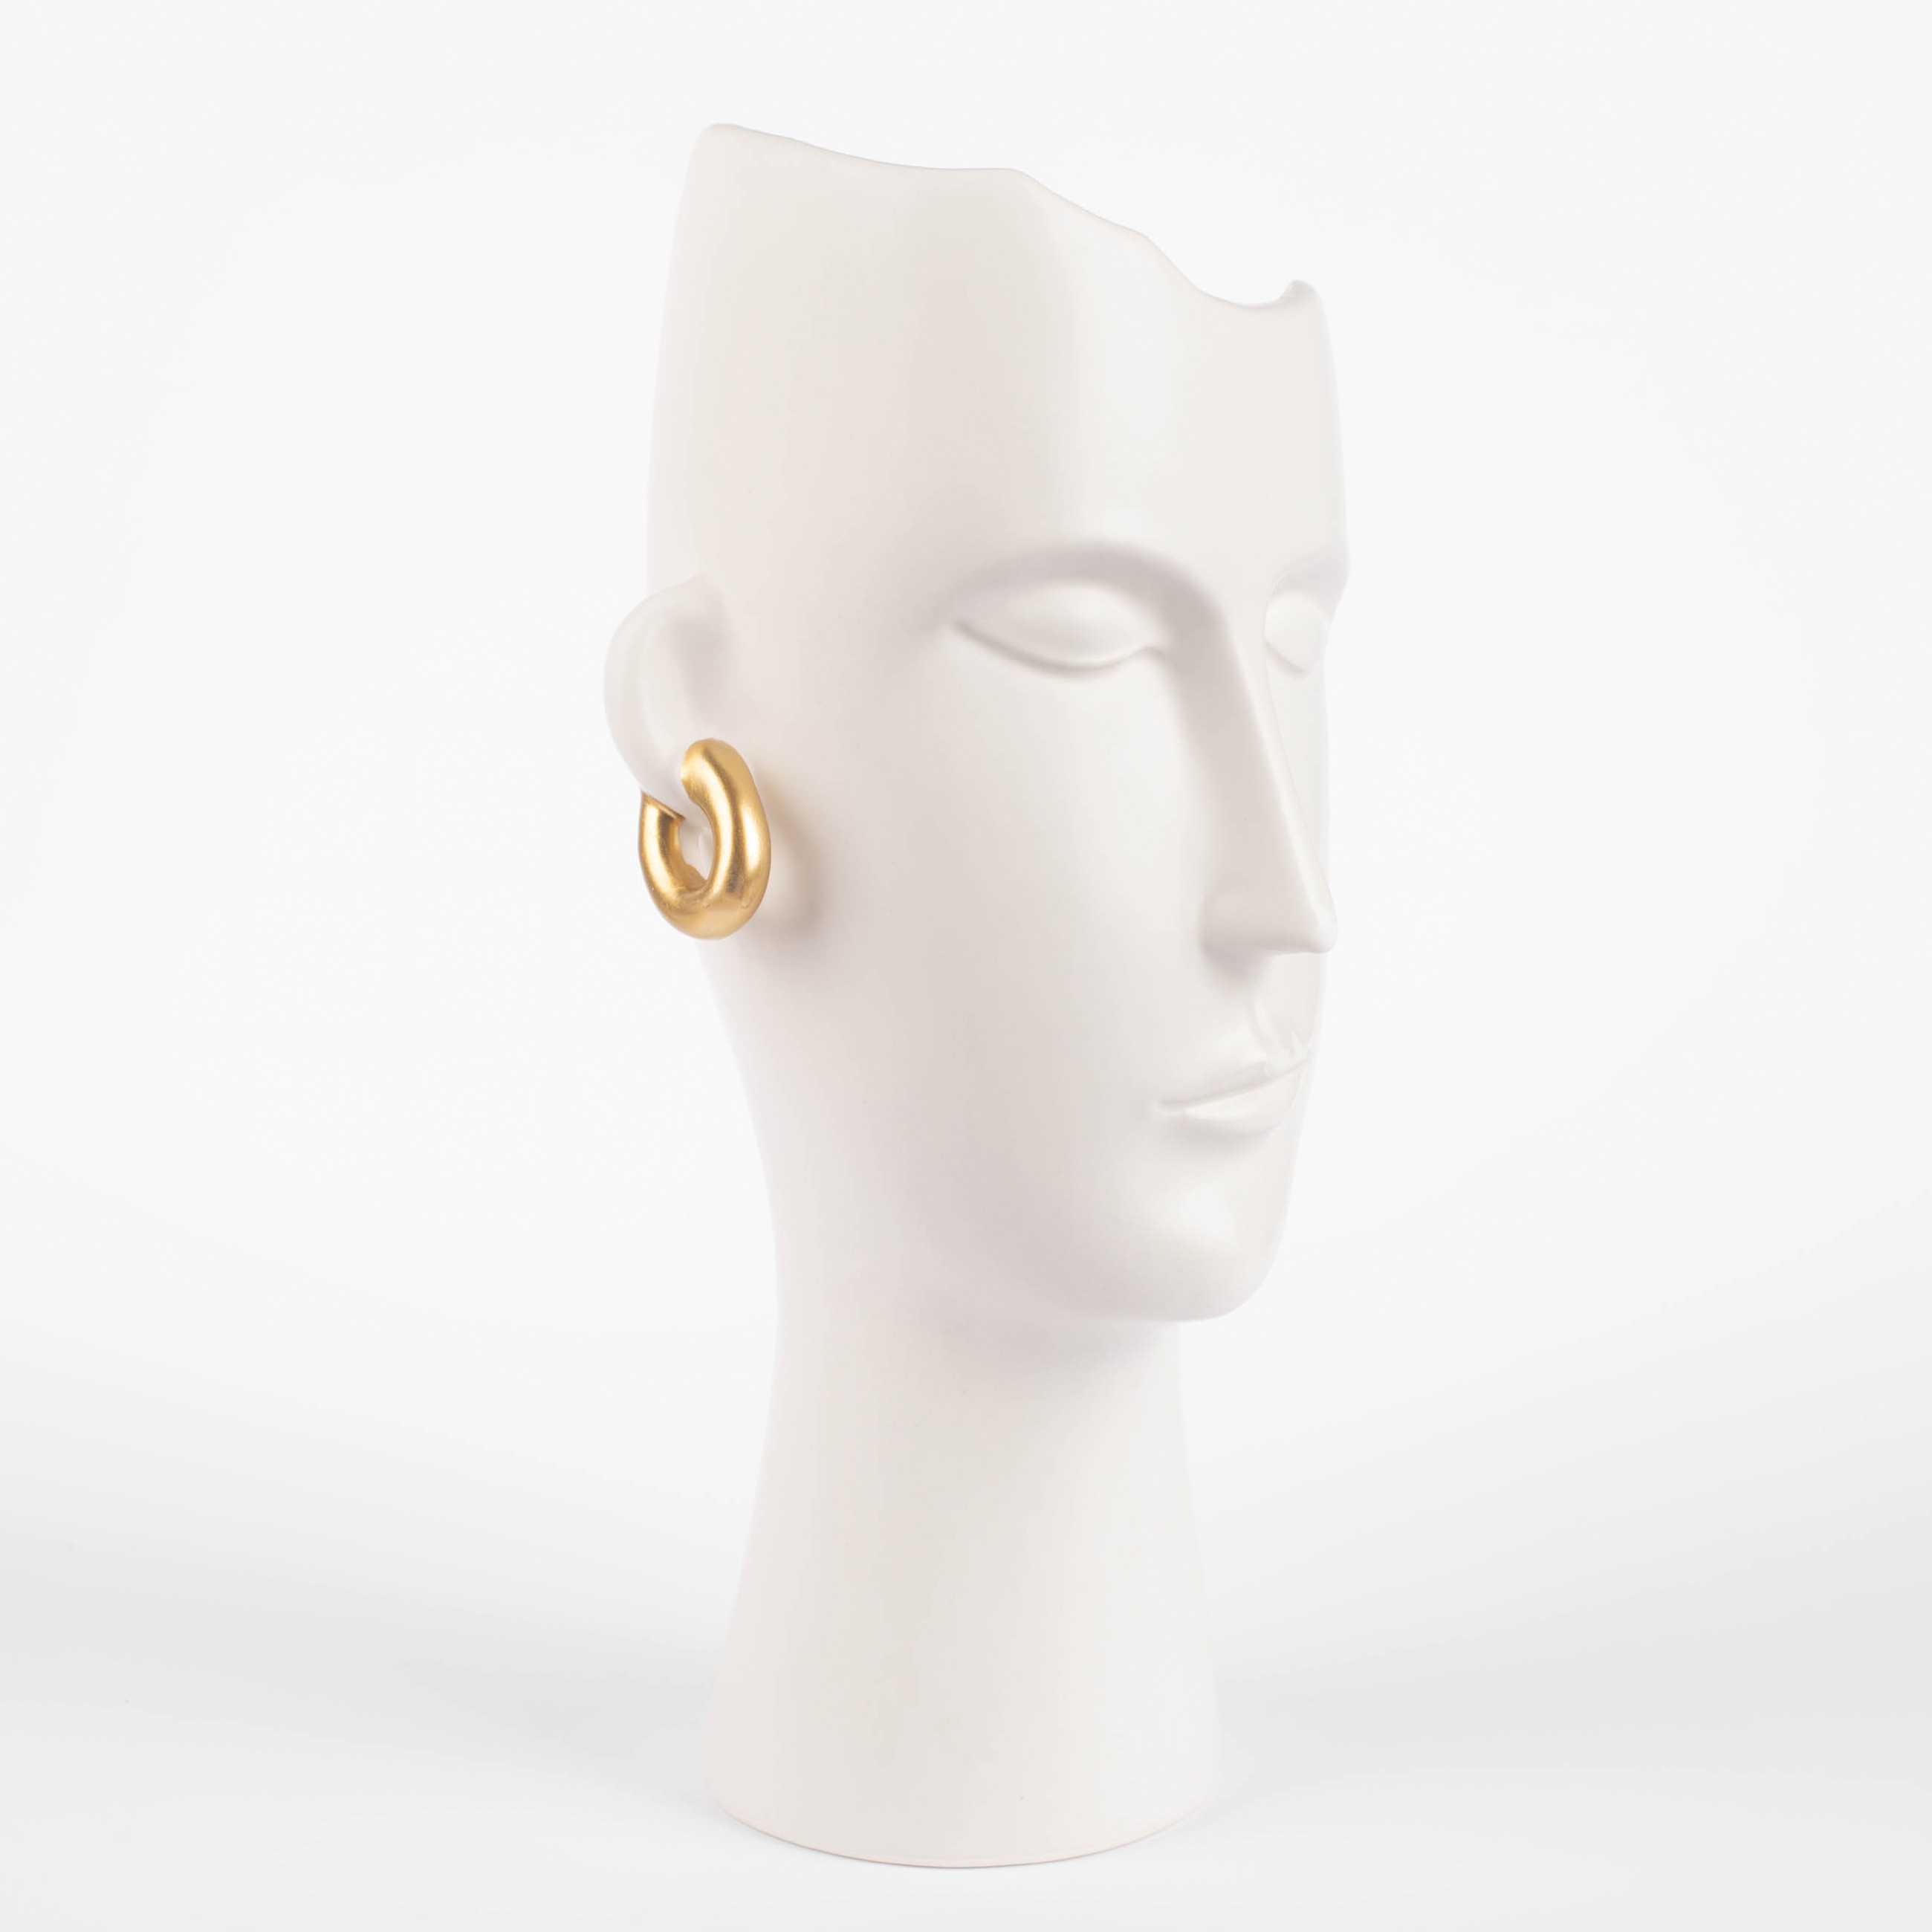 Ваза для цветов, 33 см, декоративная, керамика, белая, Девушка в золотистых сережках, Face изображение № 2